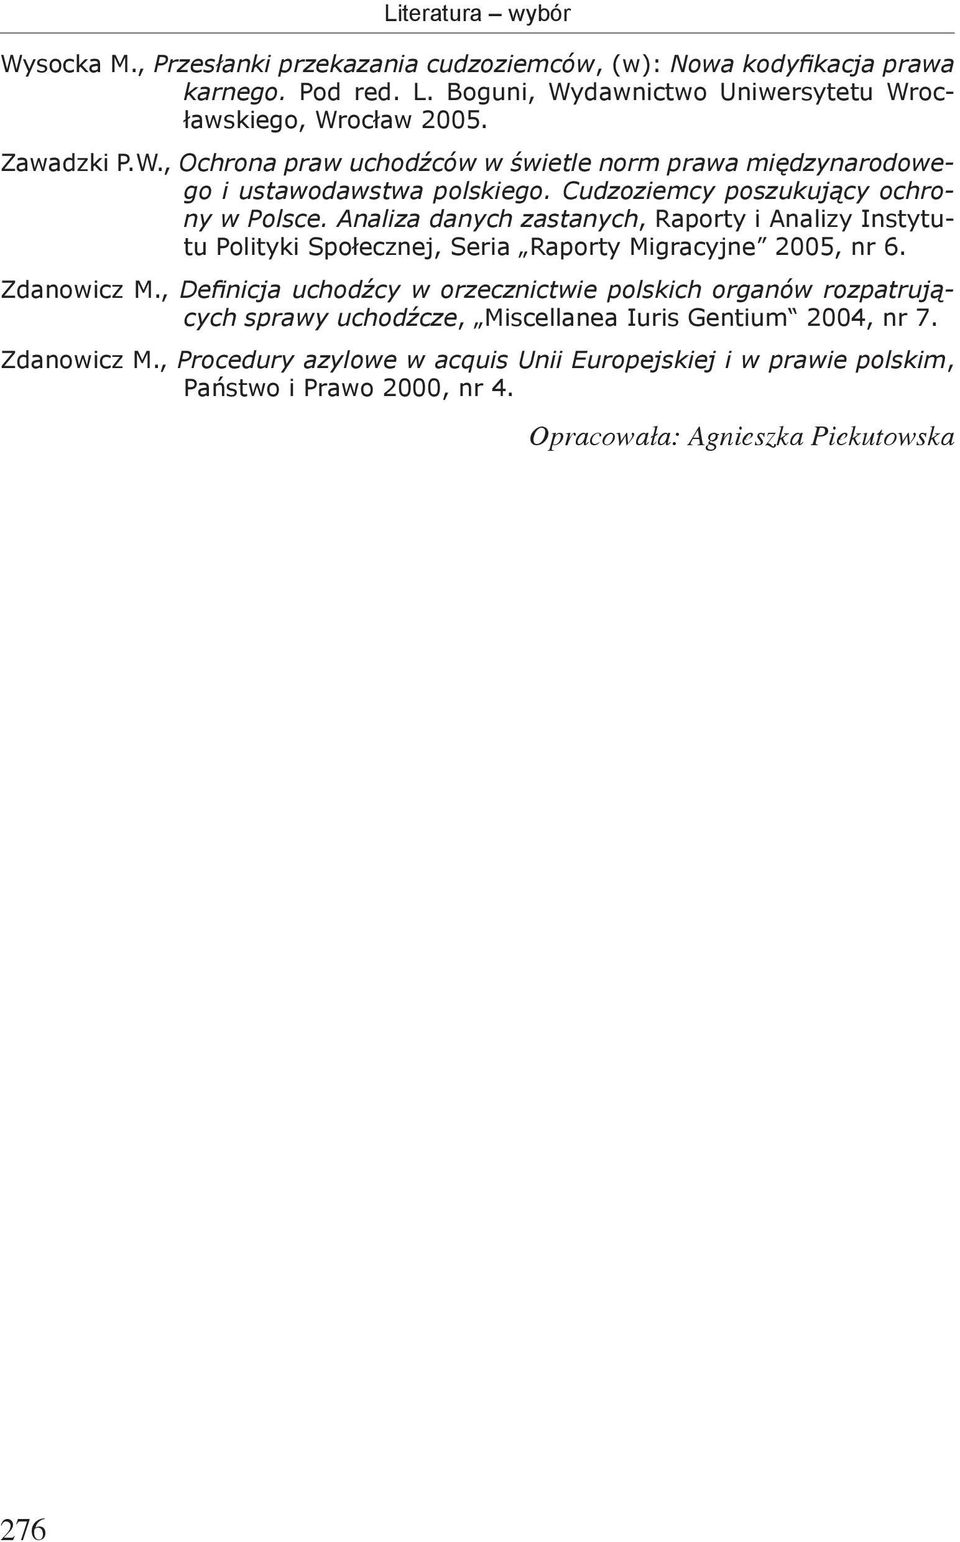 Analiza danych zastanych, Raporty i Analizy Instytutu Polityki Społecznej, Seria Raporty Migracyjne 2005, nr 6. Zdanowicz M.